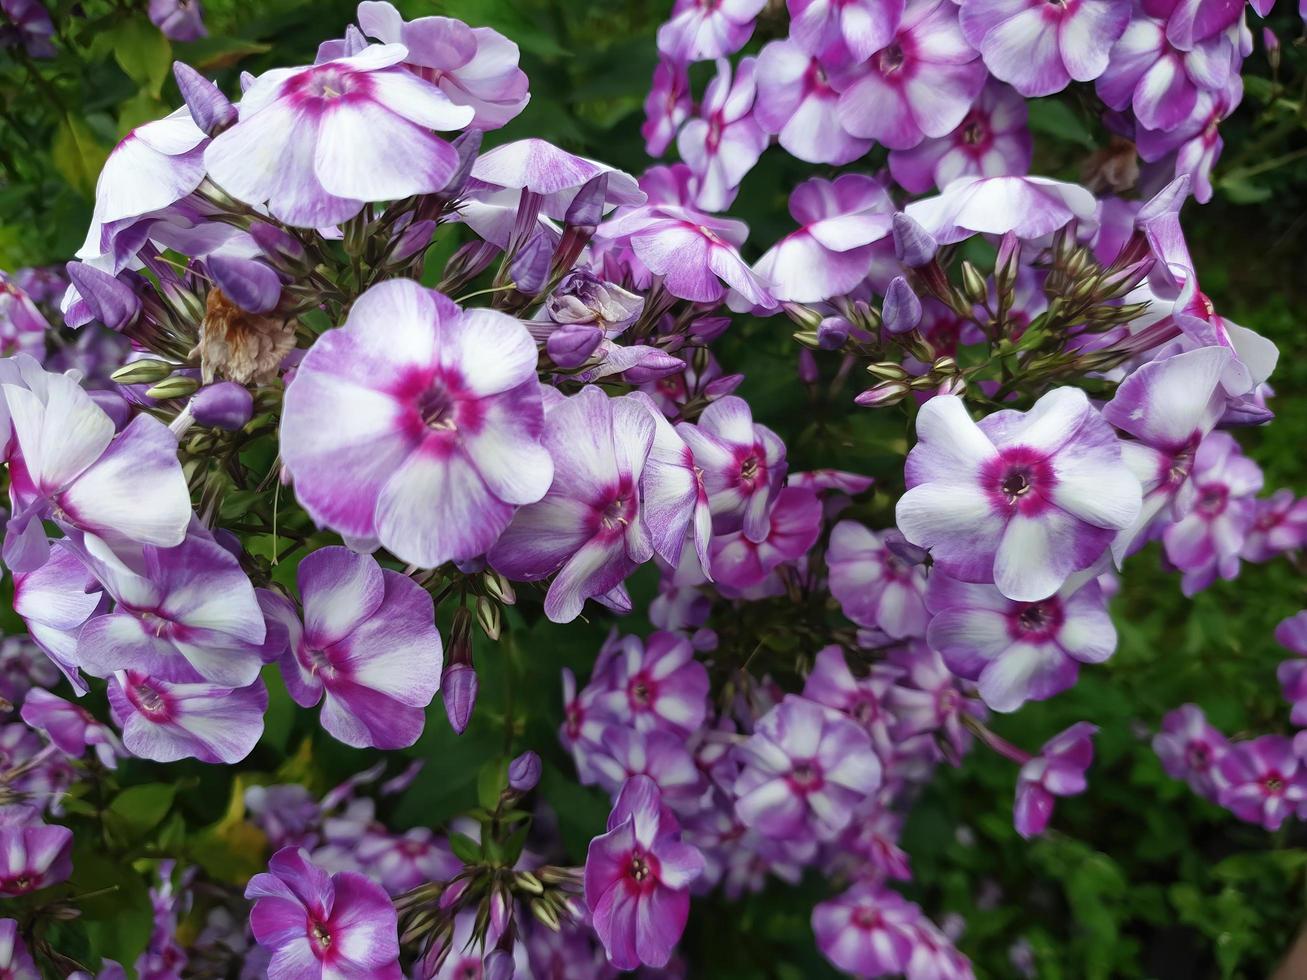 struiken met paarse bloemen foto